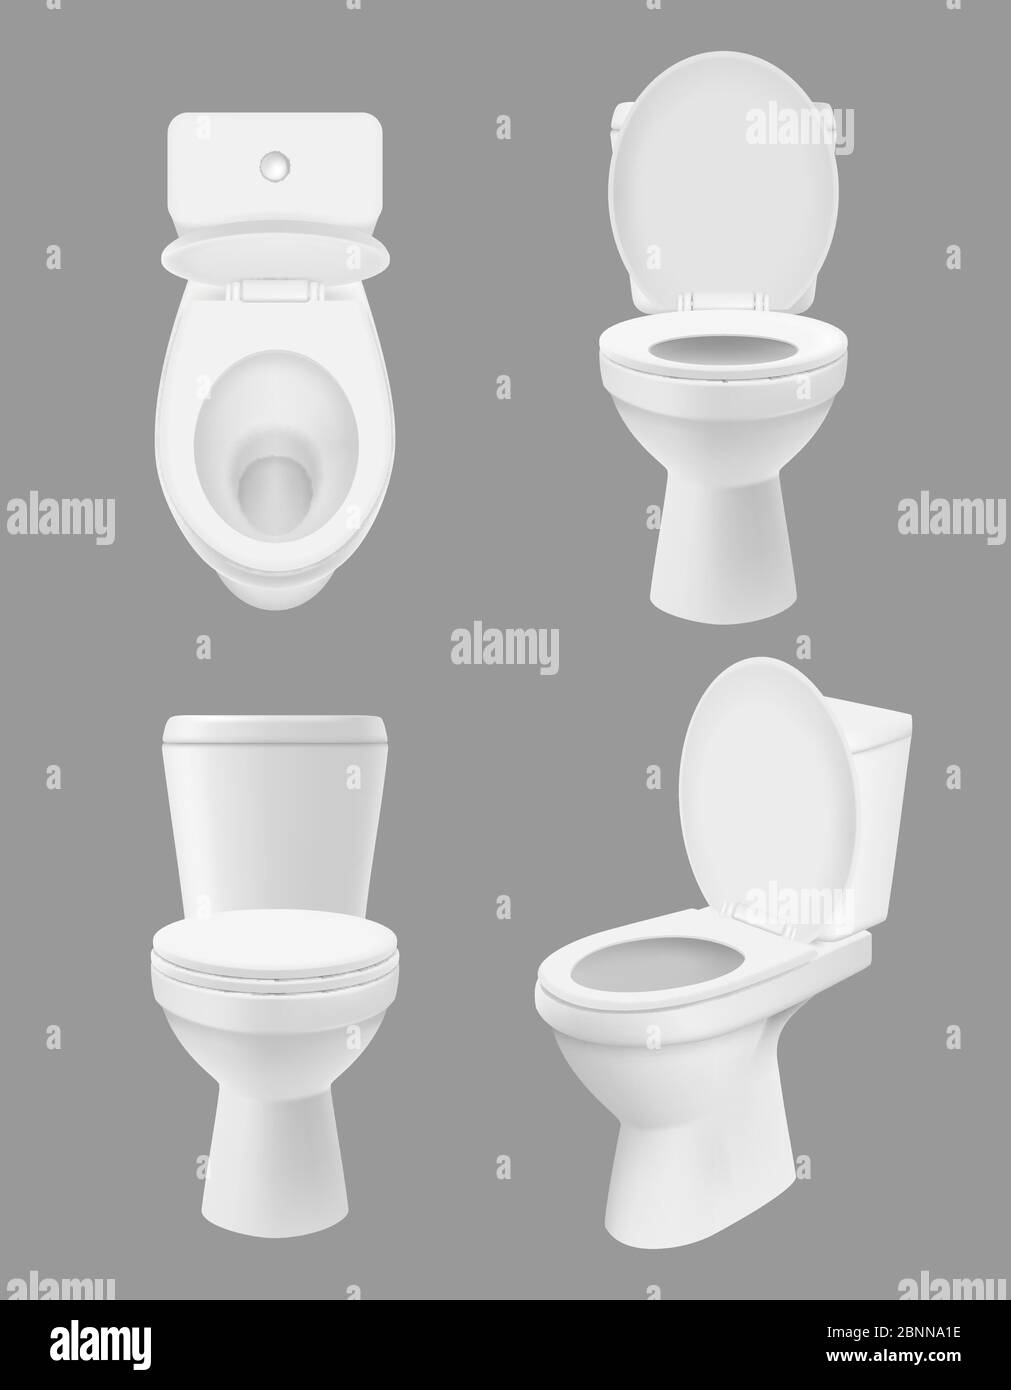 Realistische saubere Toilette. Weiße Schalen im Bad oder Waschraum verschiedene Ansichten der Nahaufnahme Toilette. Vektor Hygiene Konzept Bilder Stock Vektor